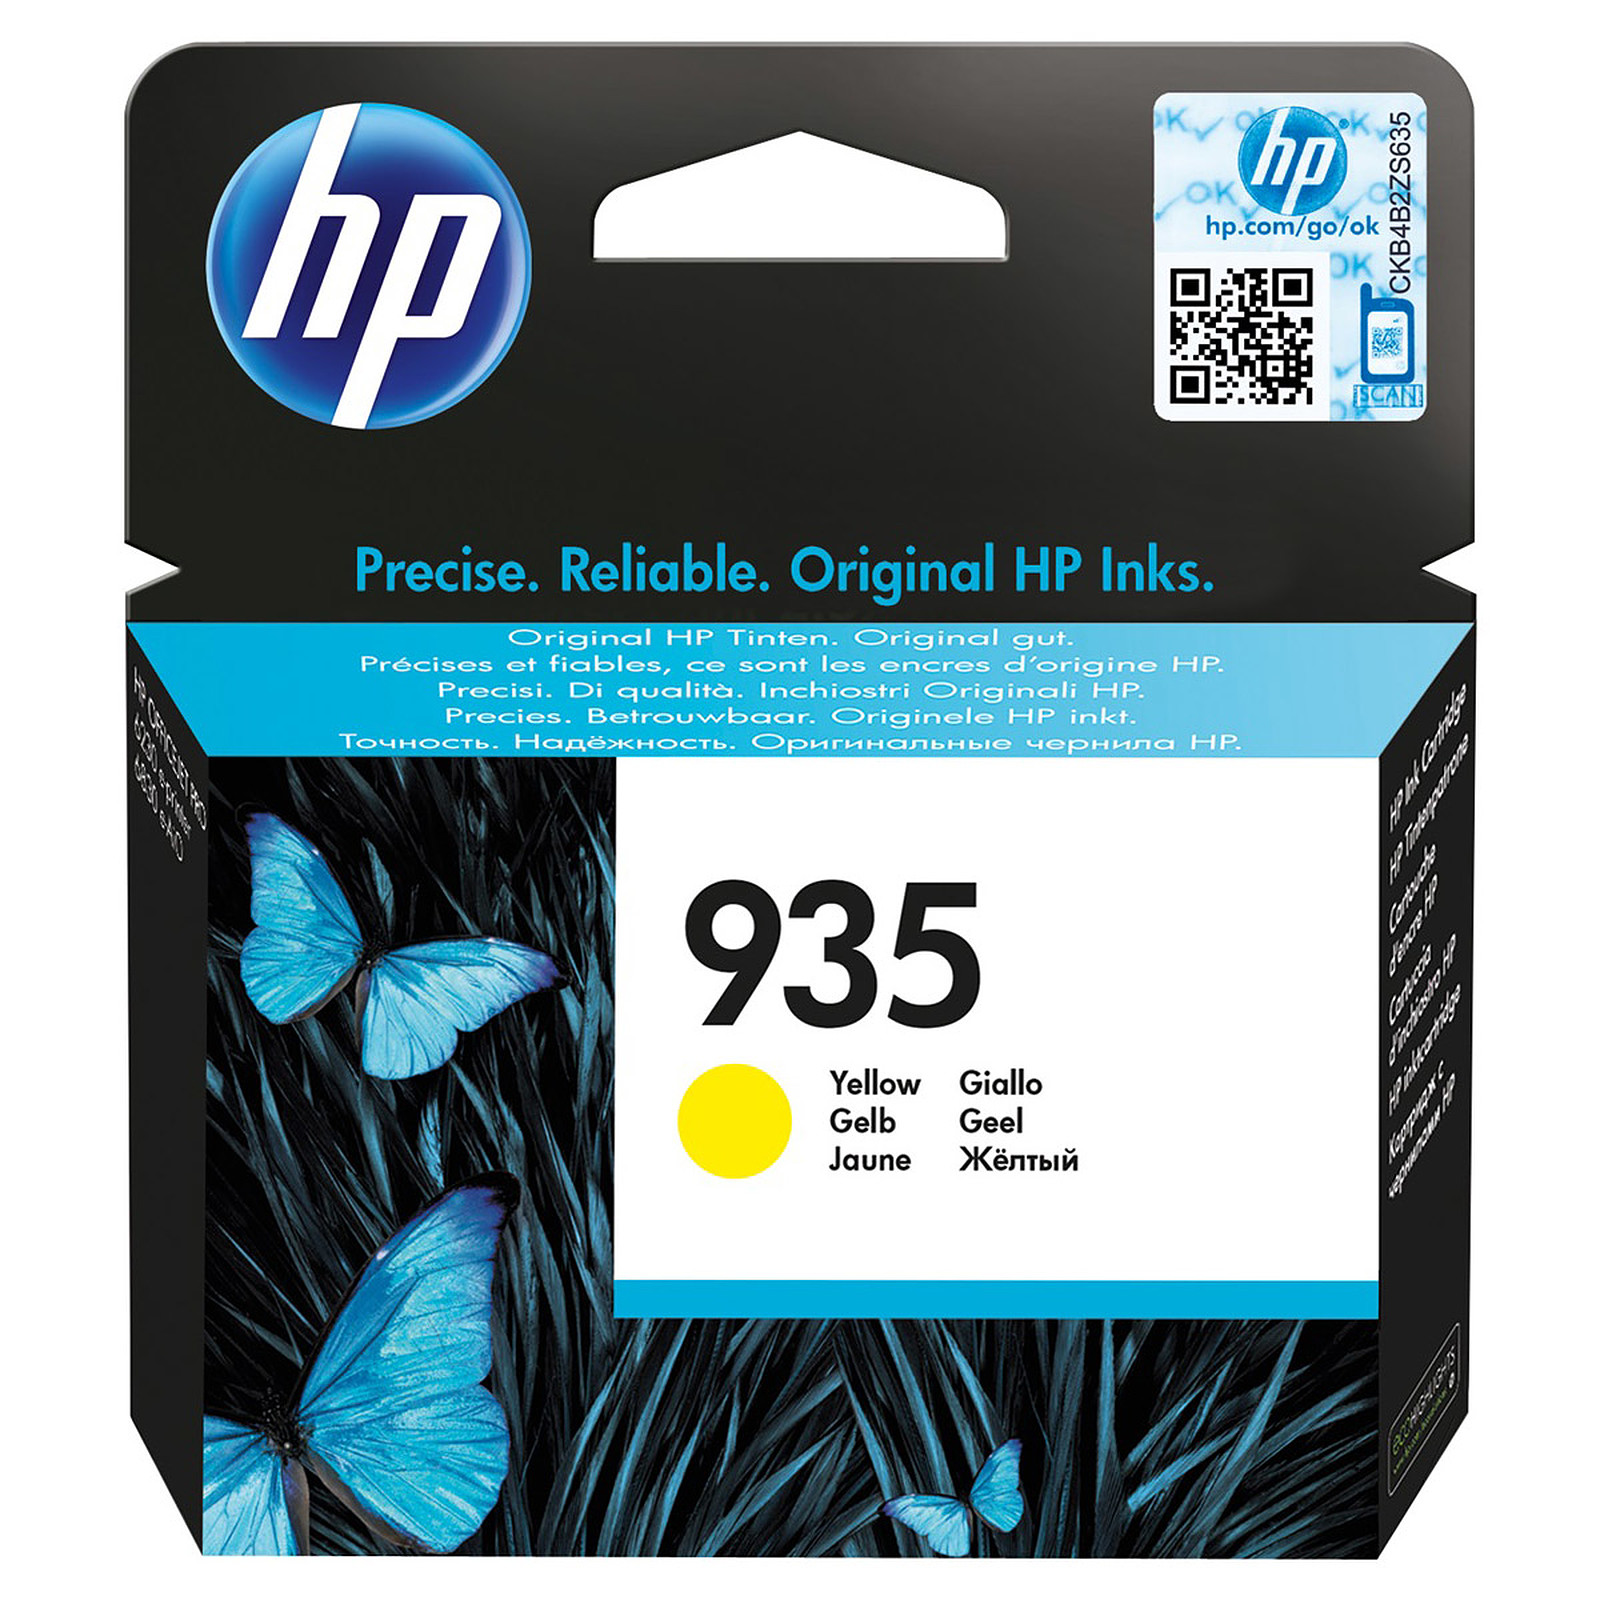 HP 935 (C2P22AE) - Jaune - Cartouche imprimante HP